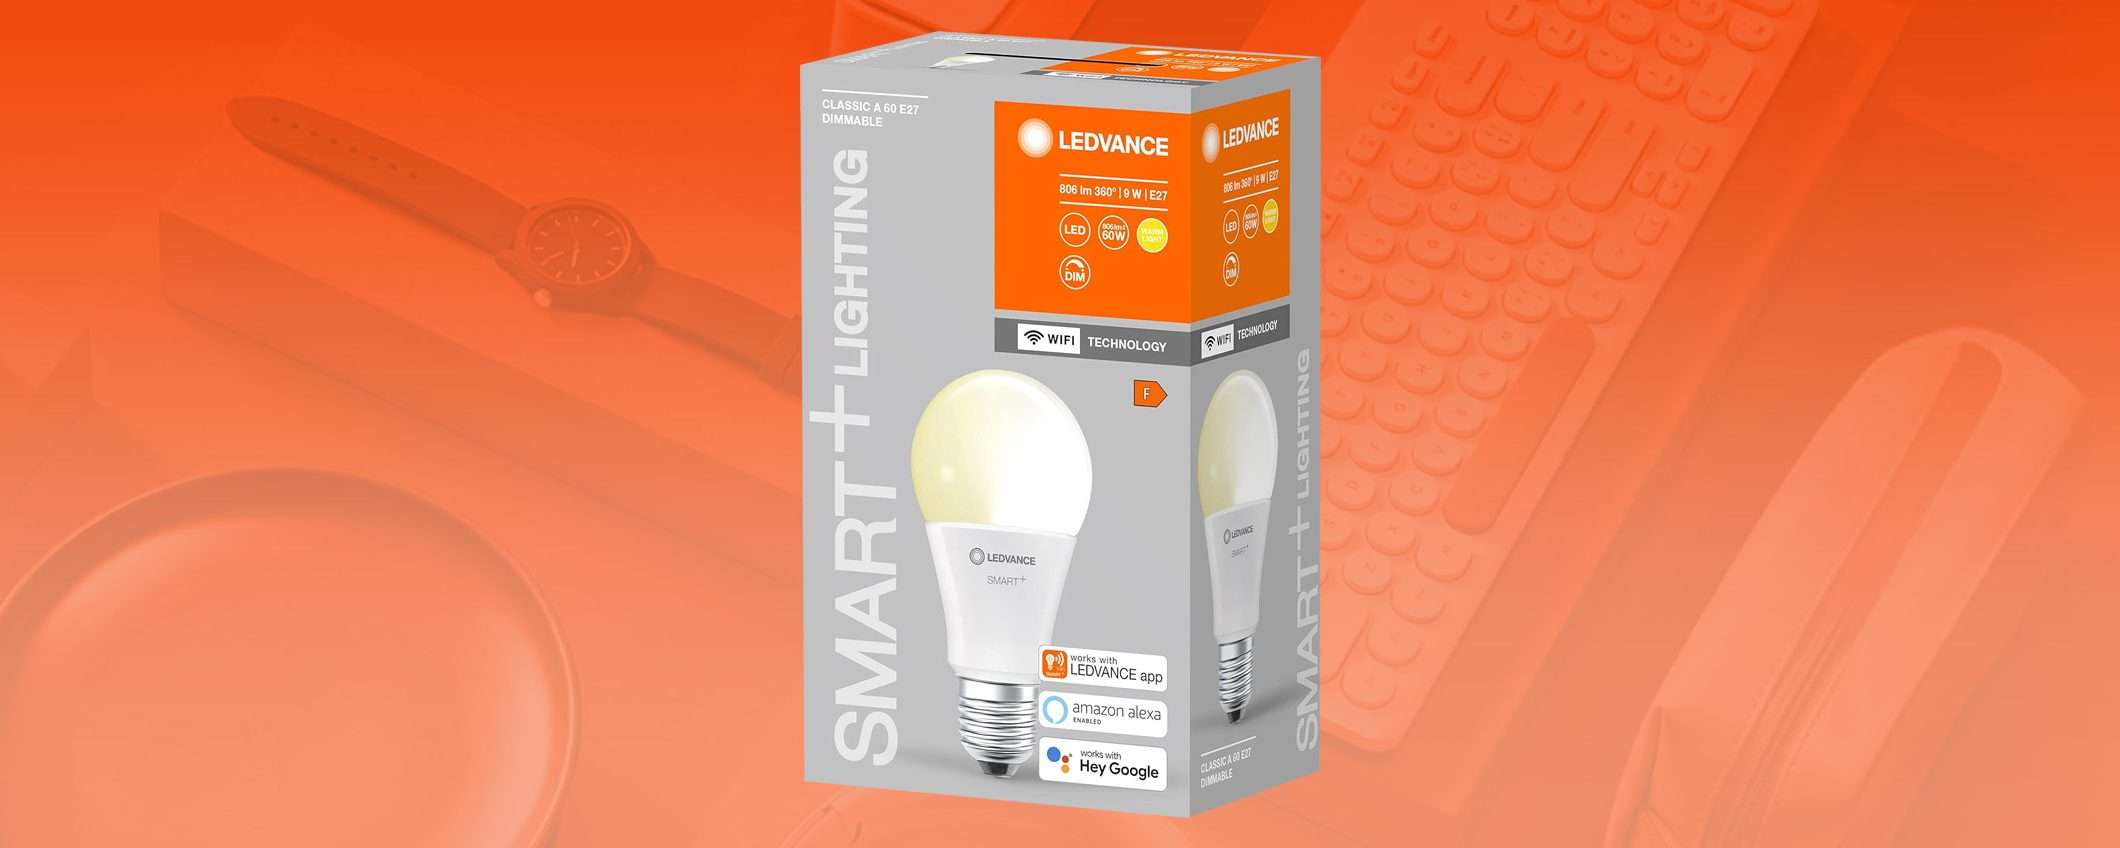 Smart home: lampadina LED Wi-Fi a 4,99€, adesso su Amazon